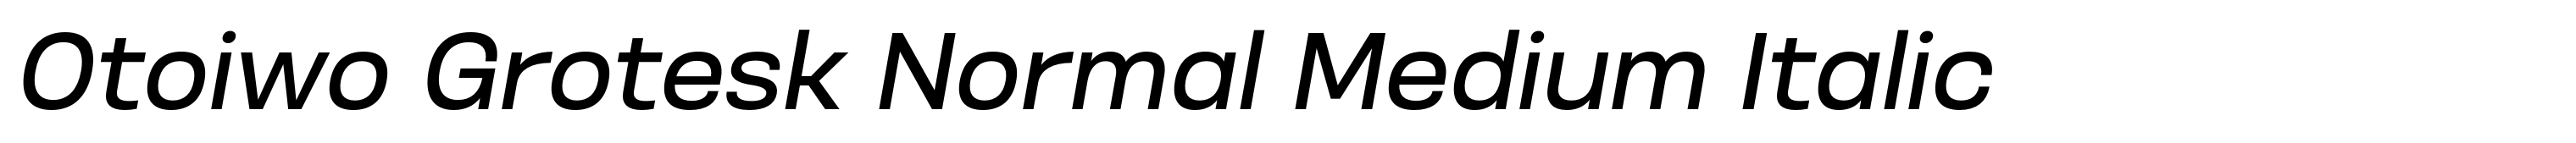 Otoiwo Grotesk Normal Medium Italic